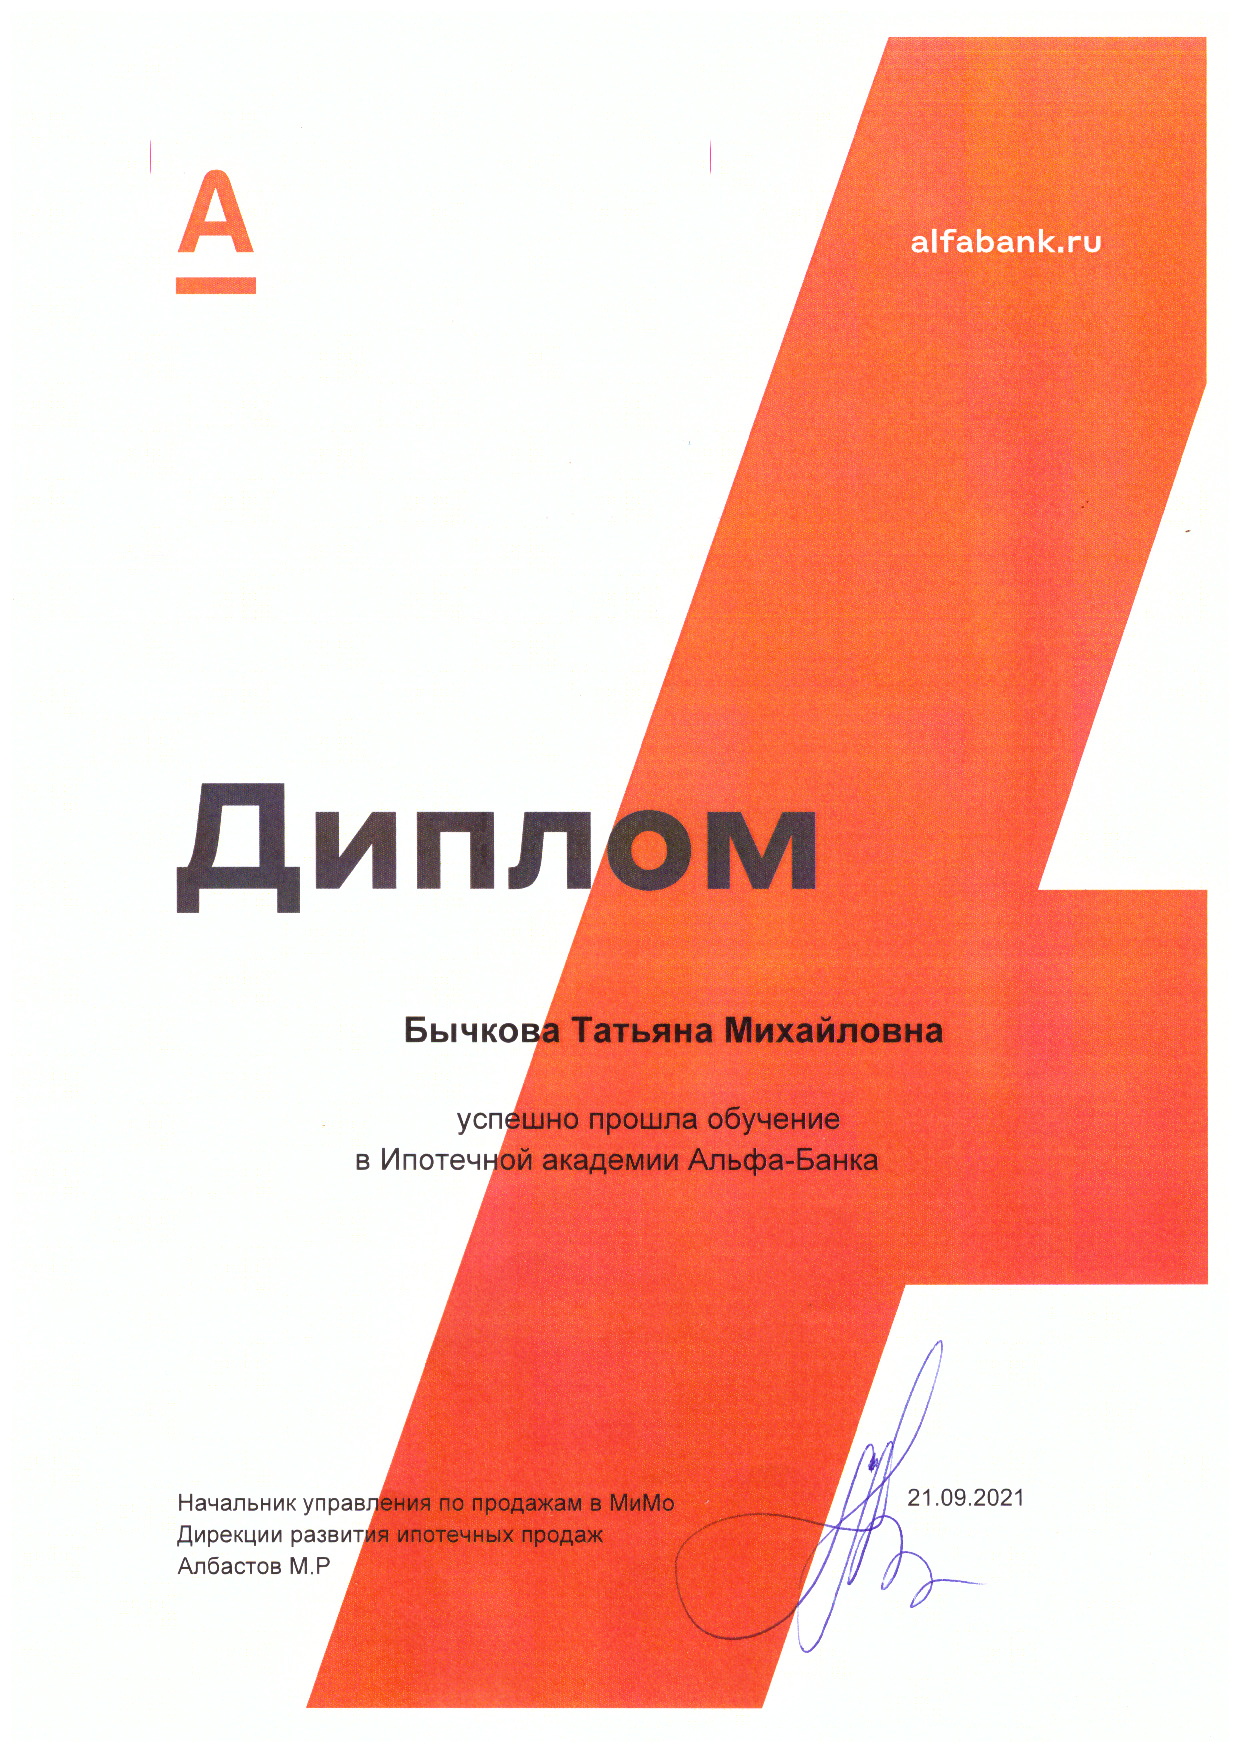 Bychkova-TM_sertifikat-AlfaBank.jpg